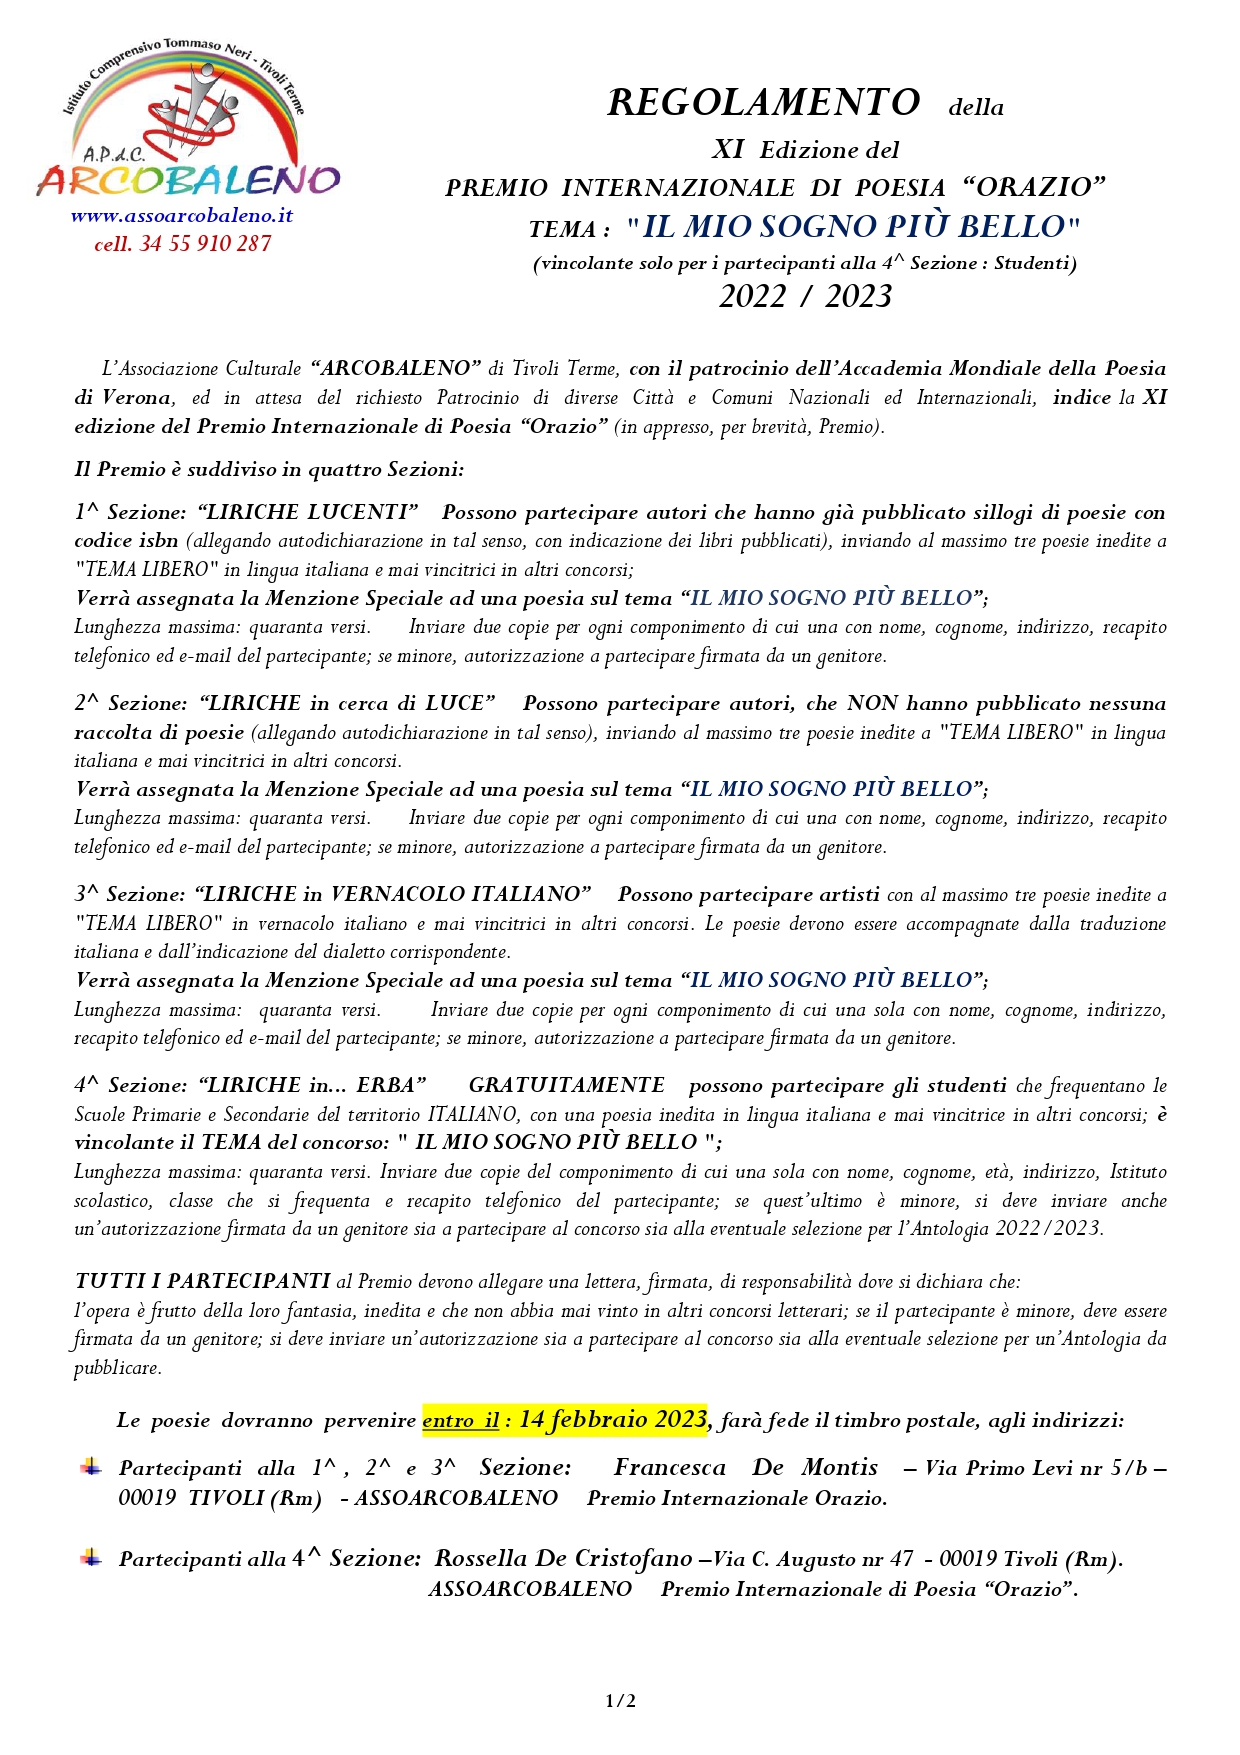 pag. 1 Regolamento XI Ed. PREMIO INTERNAZ DI POESIA ORAZIO 2022- 2023_page-0001